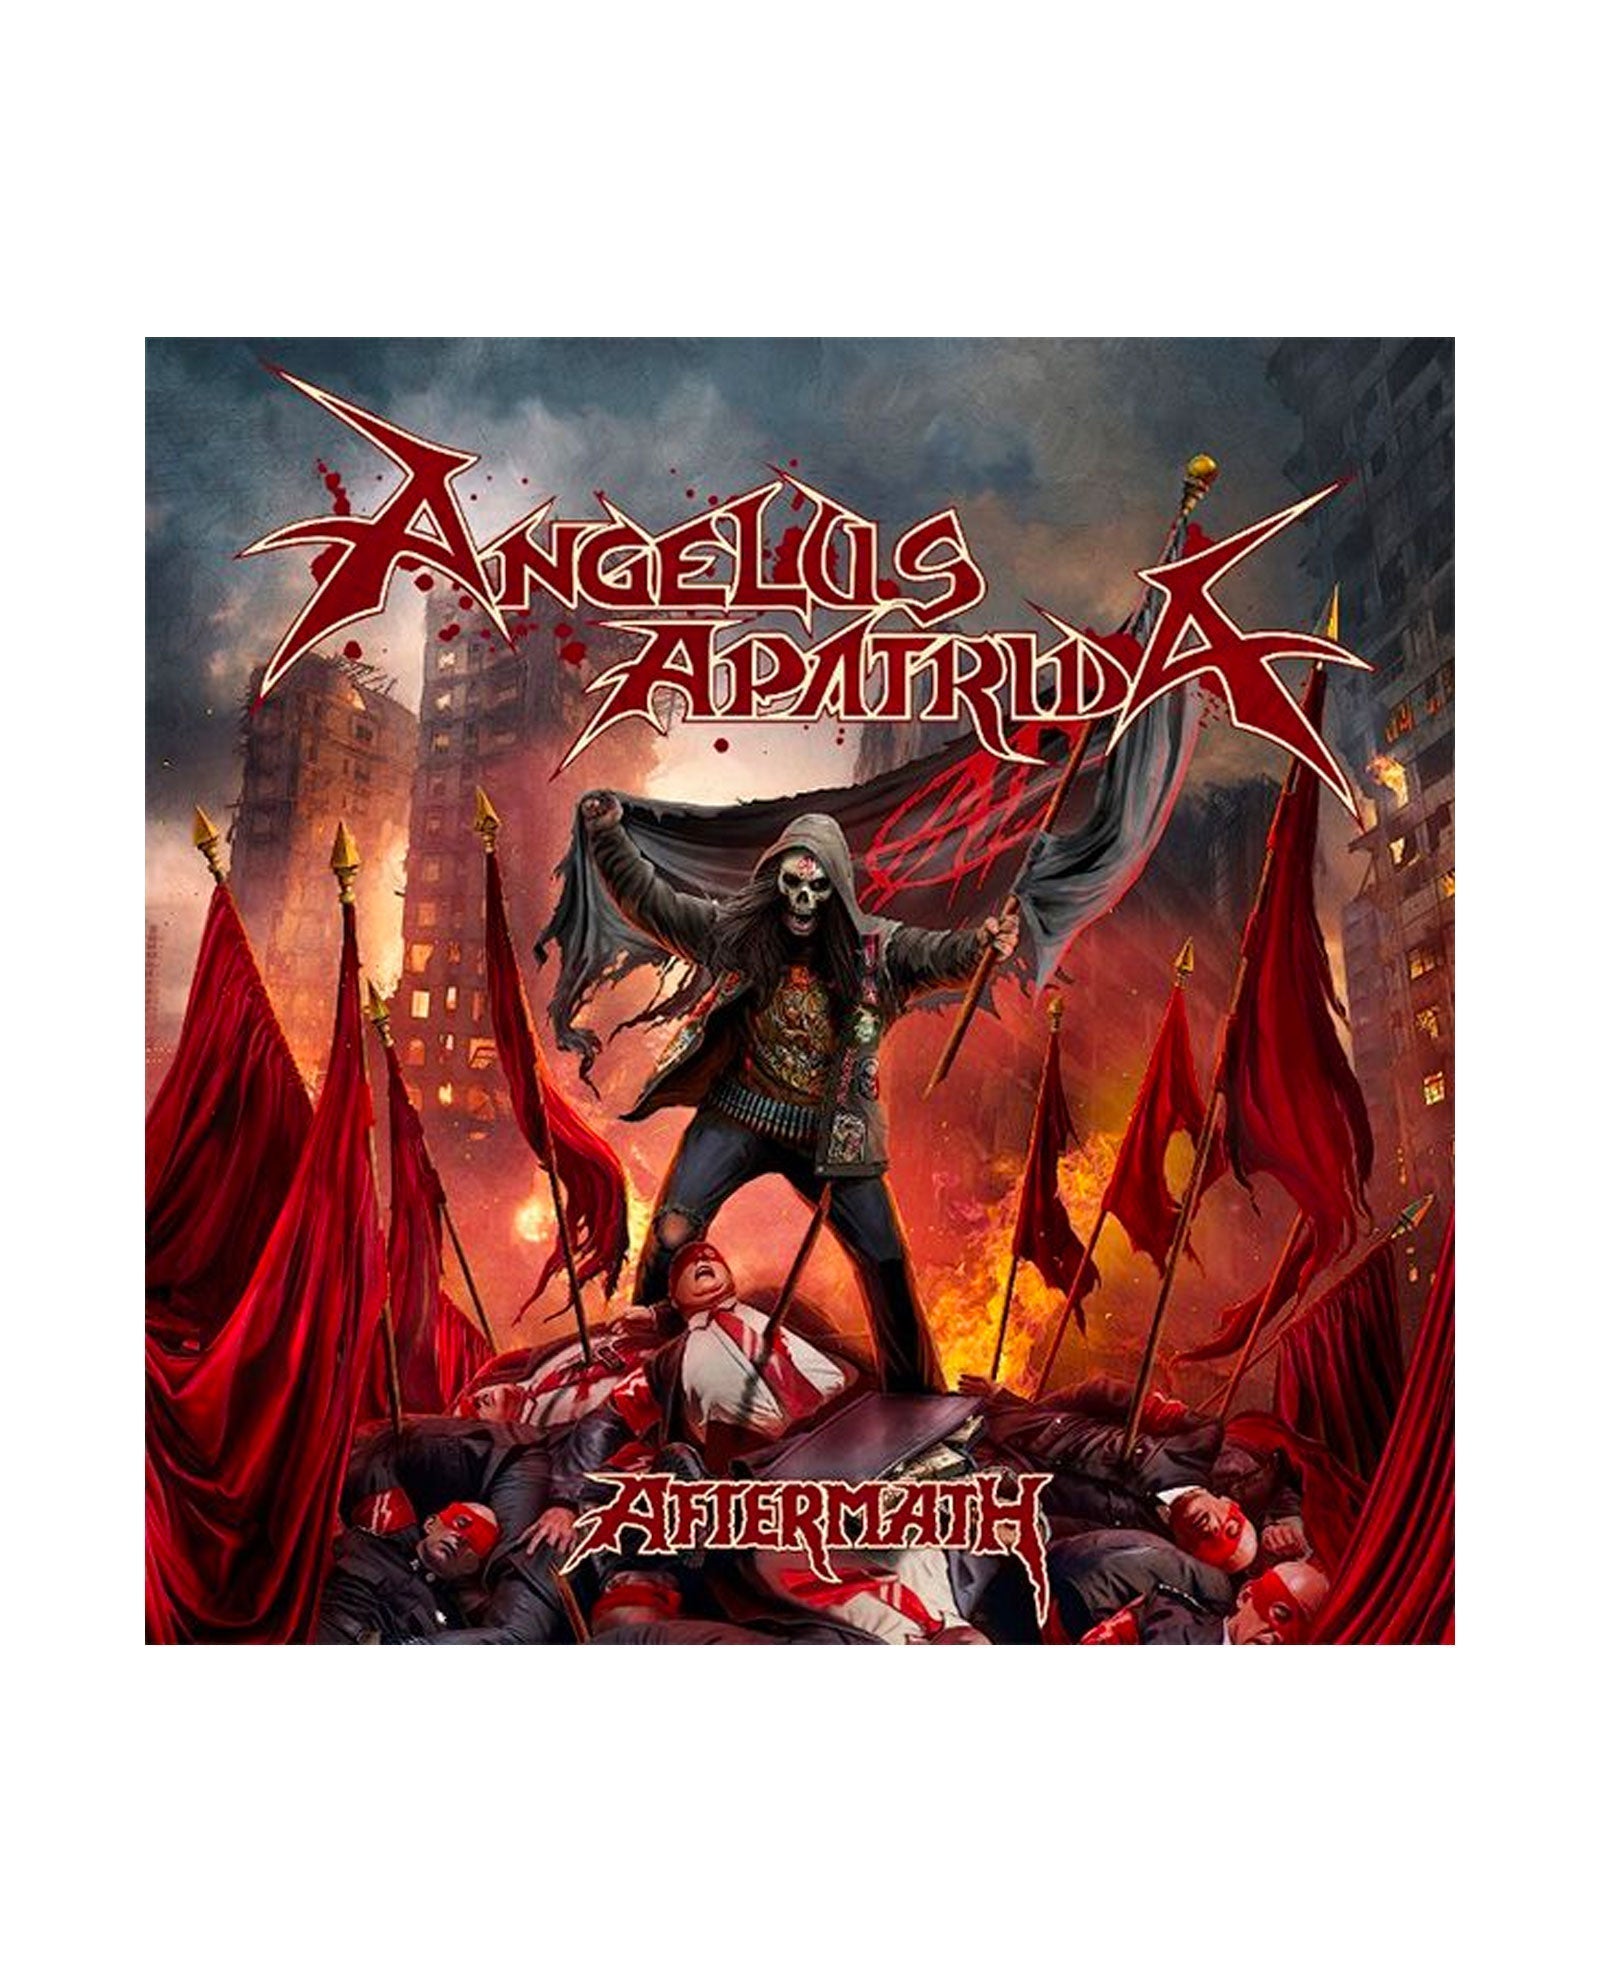 Angelus Apatrida - LP Vinilo "Afterath" - D2fy · Rocktud - Rocktud